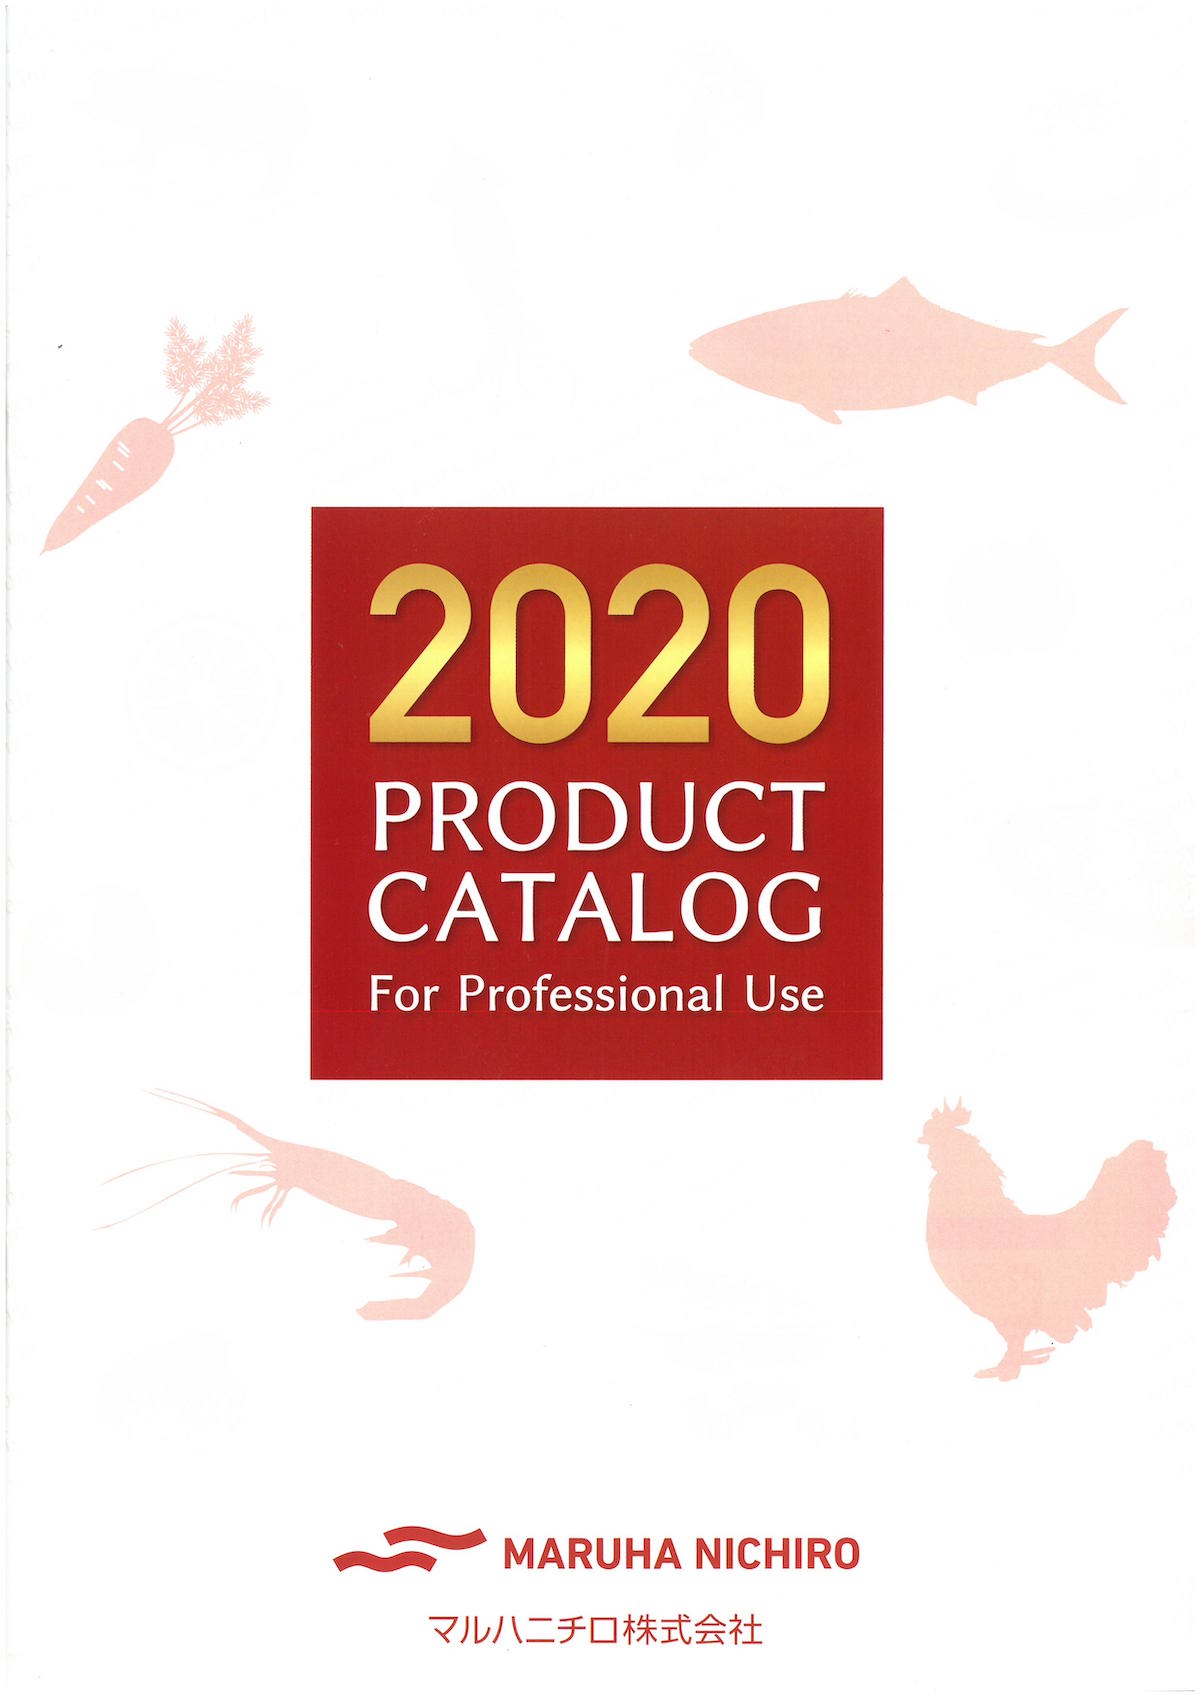 マルハニチロ 2020業務用商品カタログ 総合 PRODUCT CATALOG For Professional Use | 冷凍食品カタログ.com